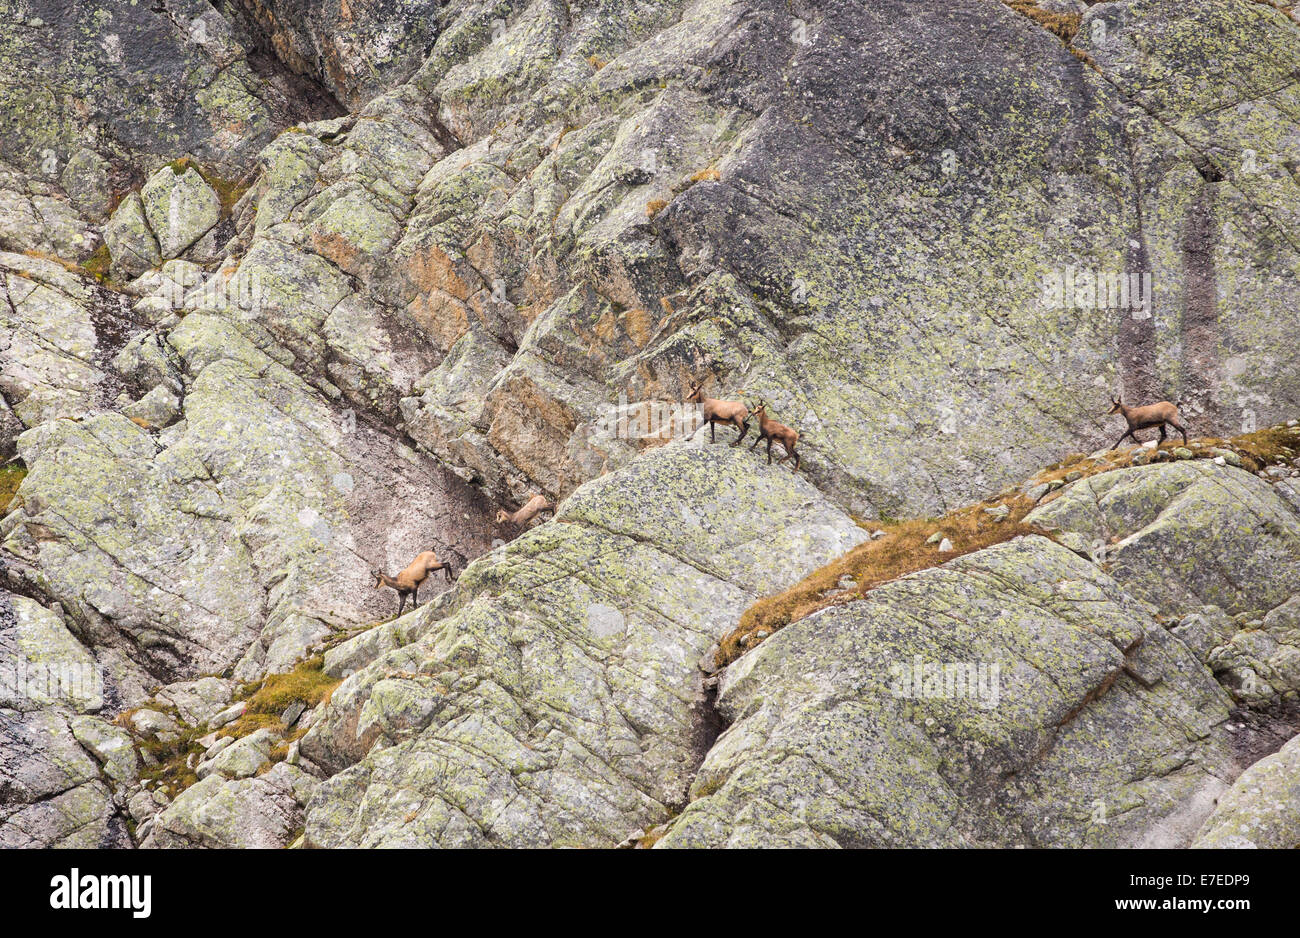 Gämse, Rupicapra Rupicapra, auf einer Felswand in der Nähe von Cabanne D'Orny in den Schweizer Alpen. Stockfoto